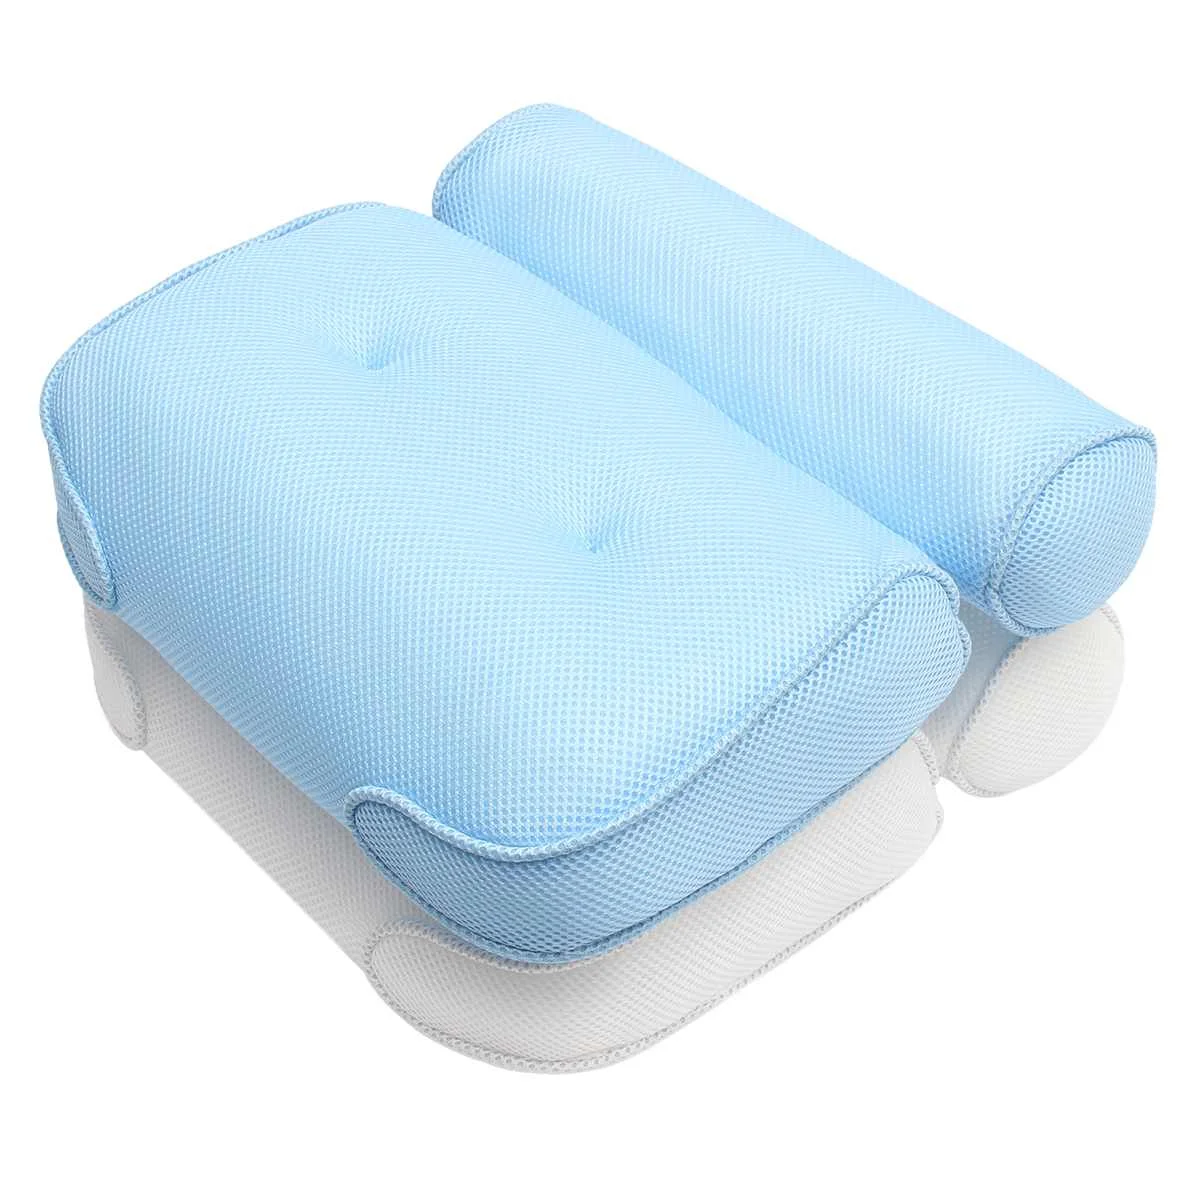 3D сетка спа нескользящая Мягкая Ванна ванна спа Подушка Ванна подголовник подушка с присосками для шеи и спины ванная комната поставка